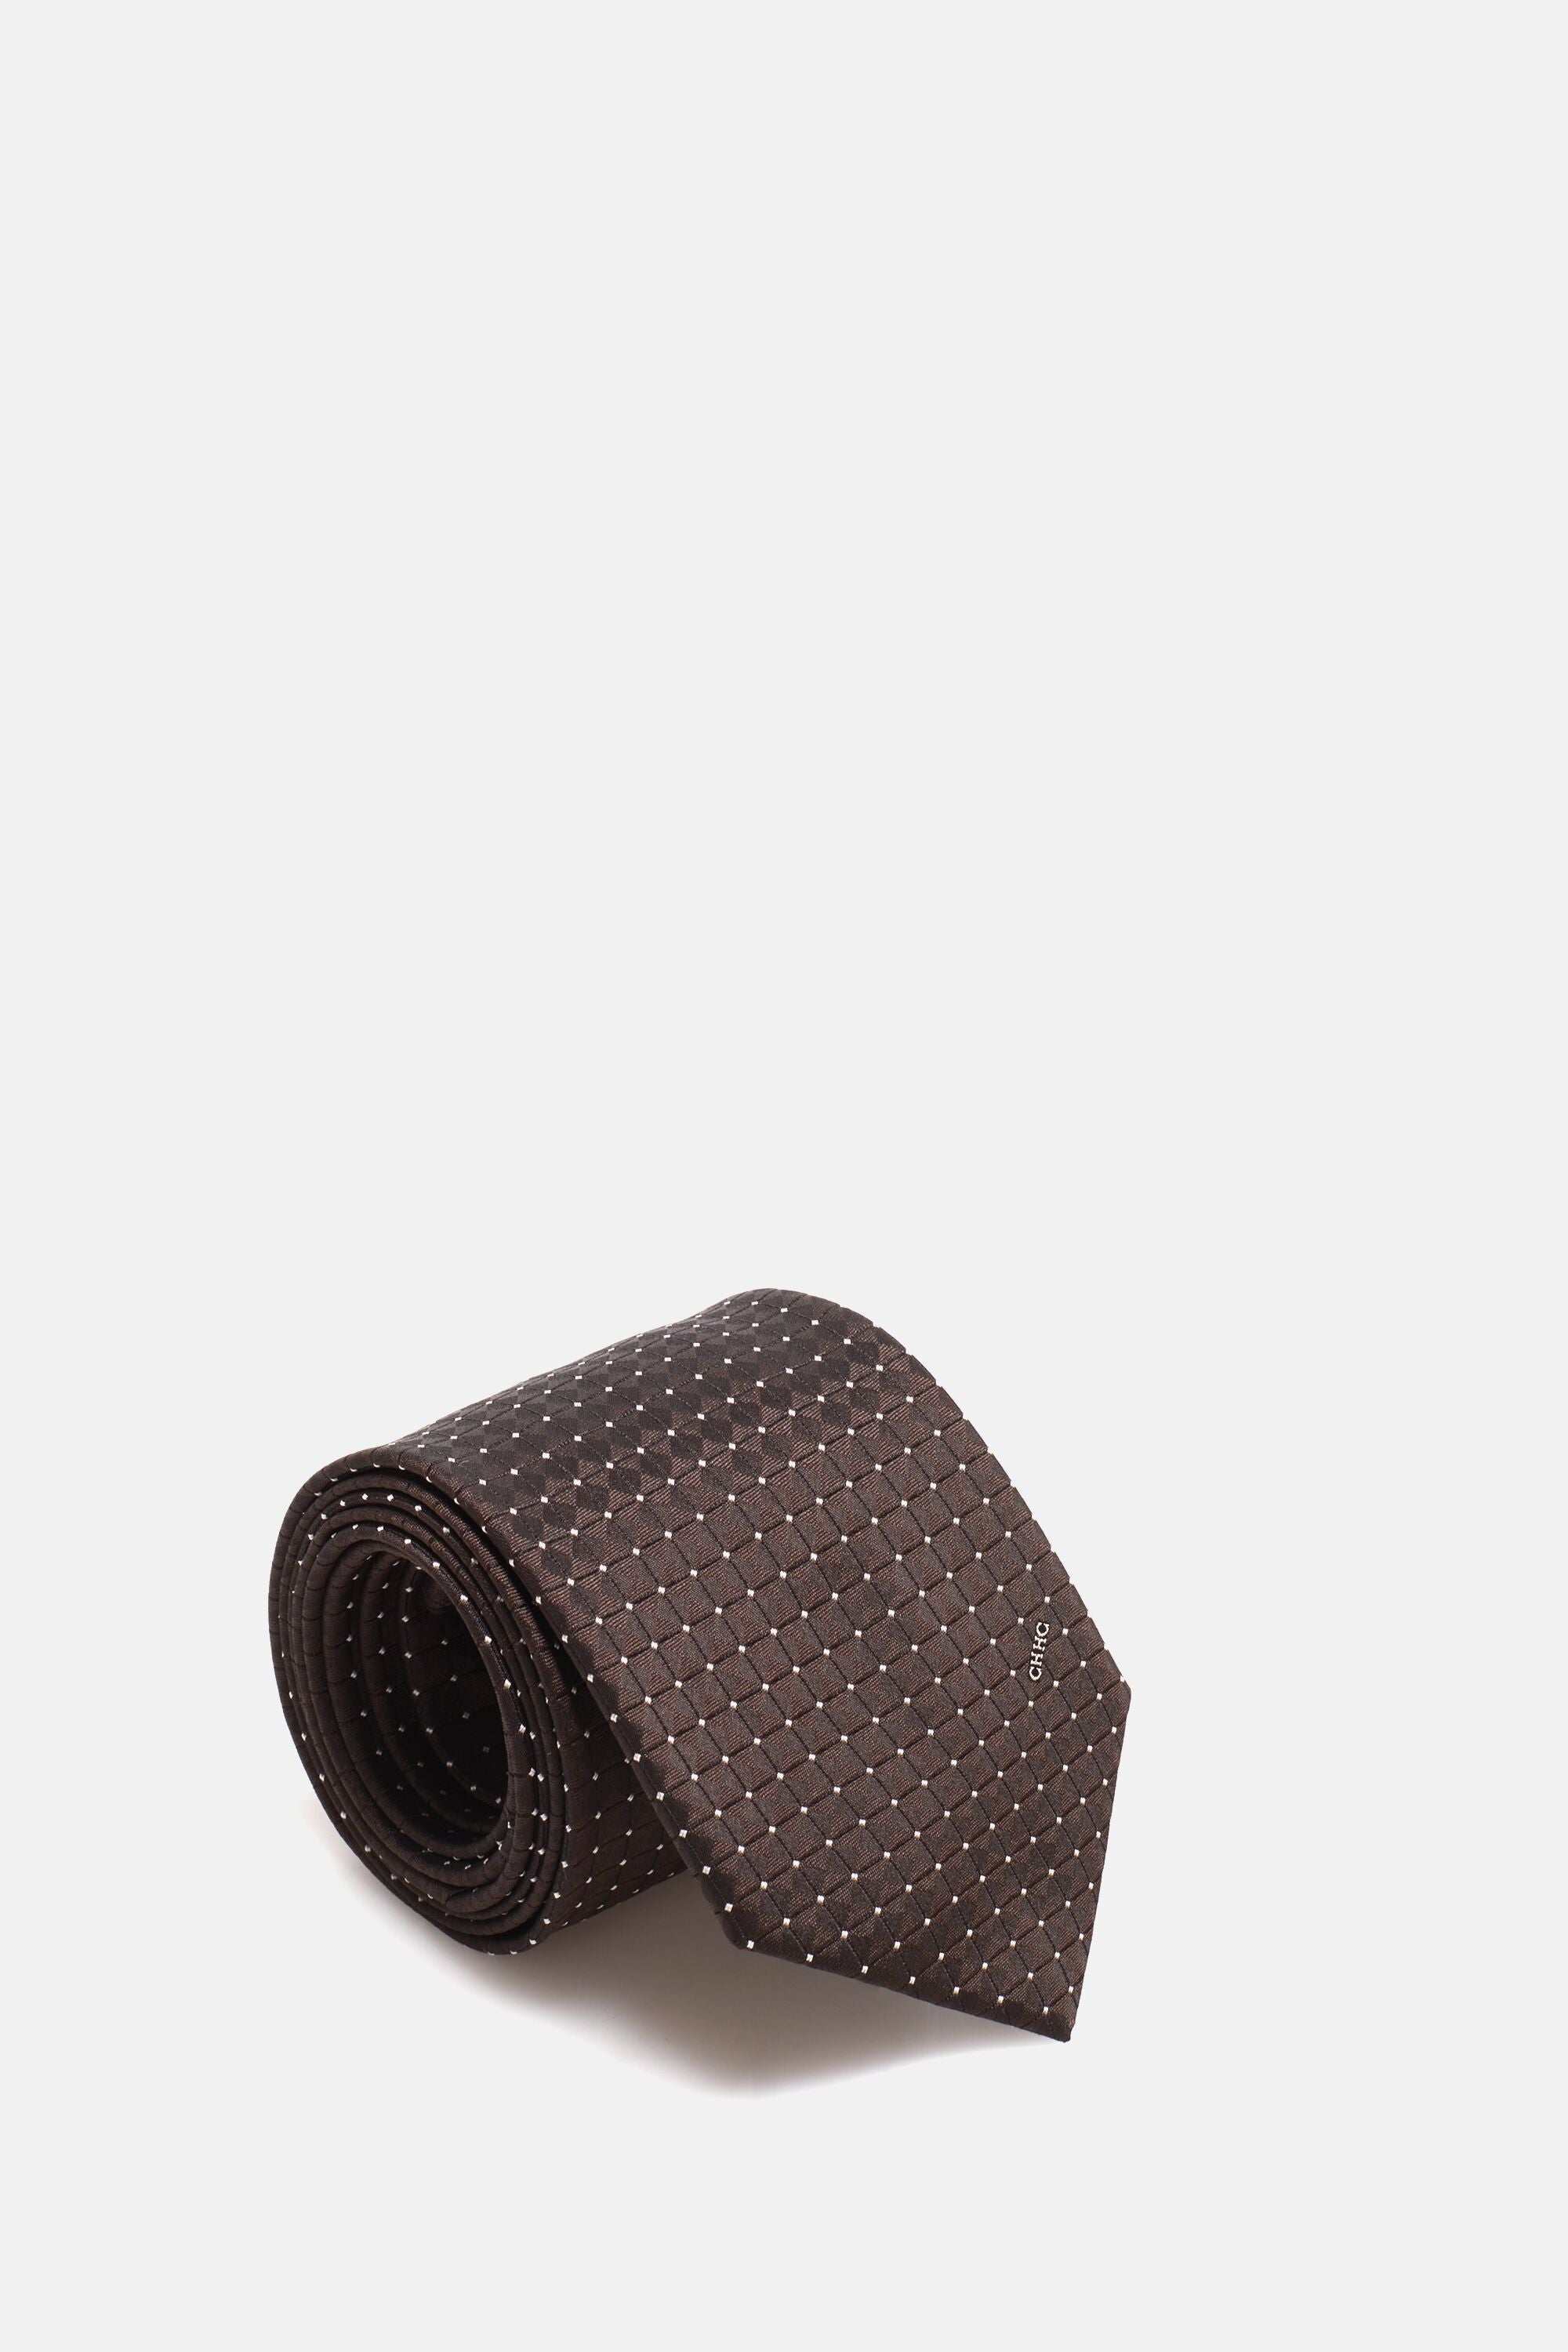 Brown micro-patterned silk tie